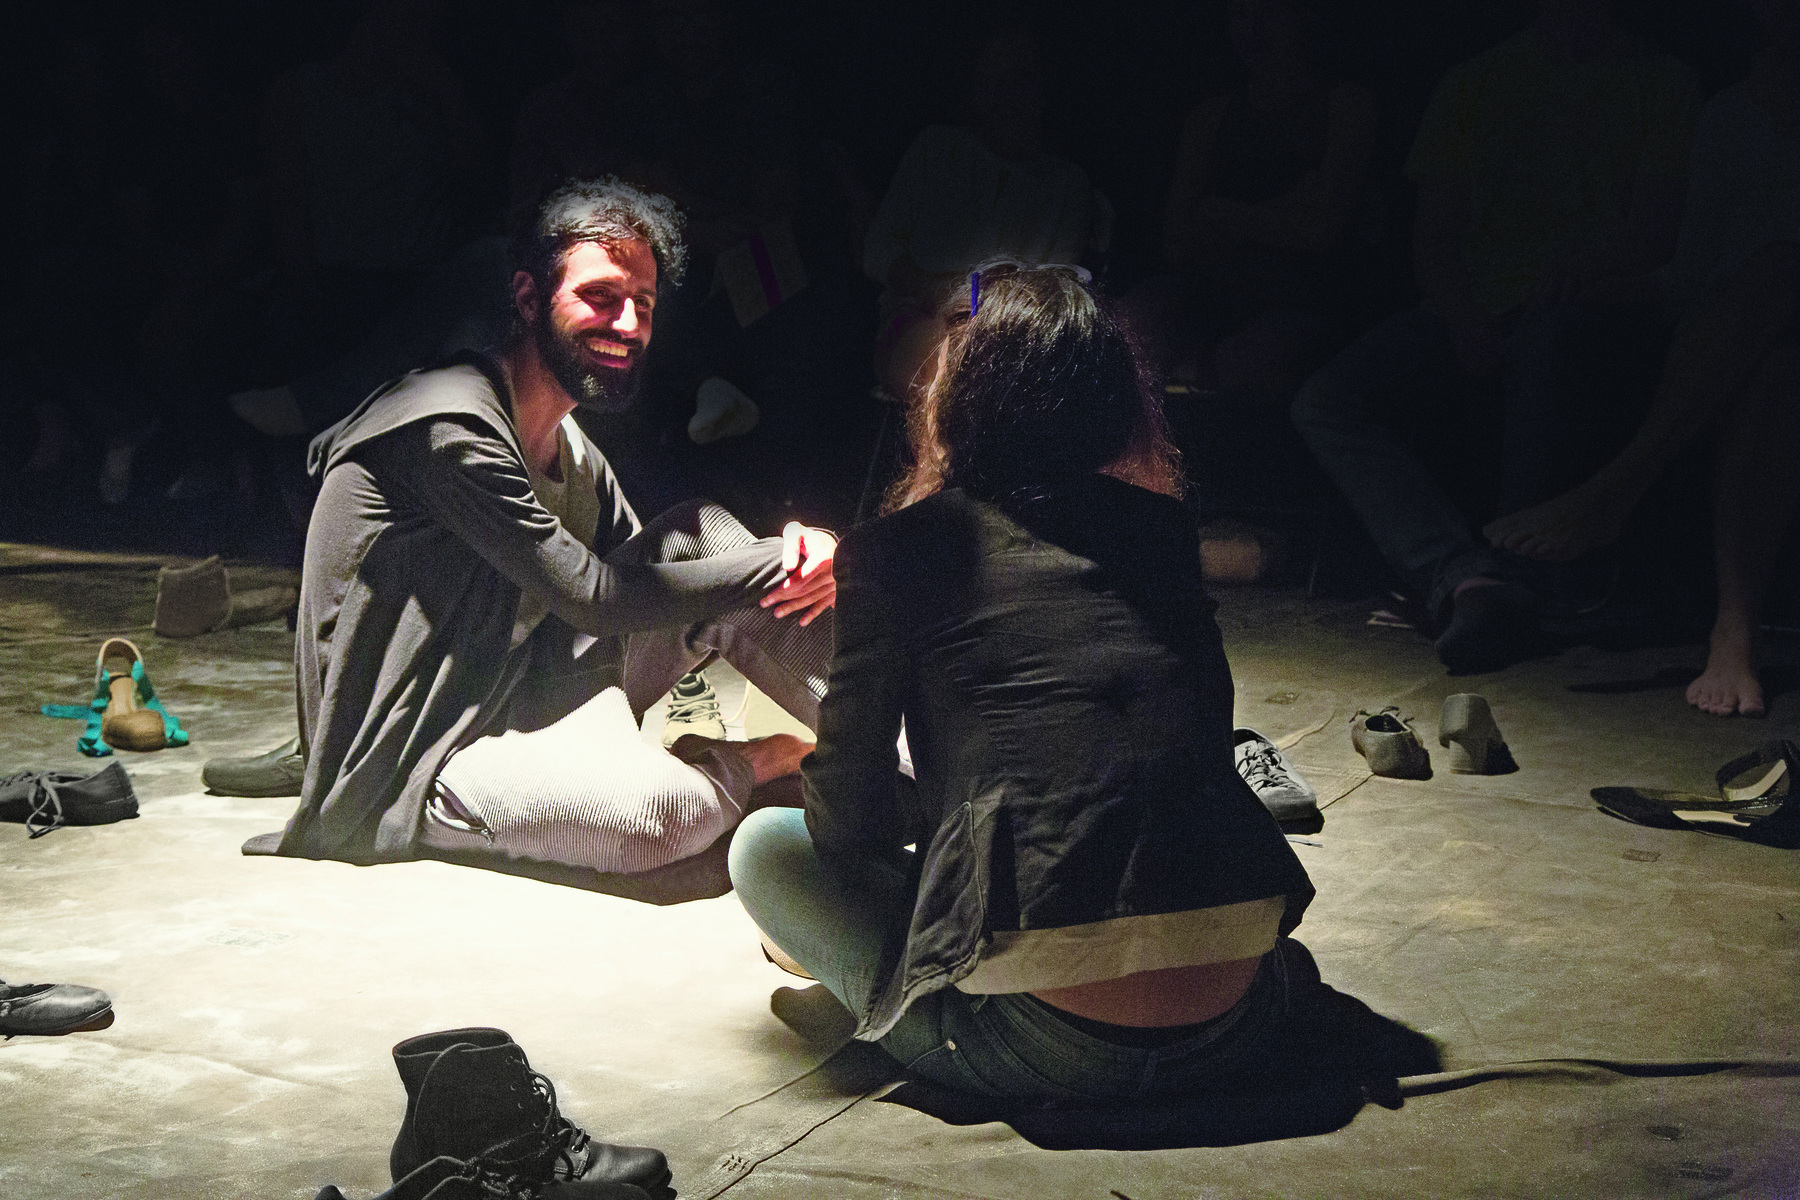 Fotografia. Duas pessoas conversam sentadas ao chão. Um homem de cabelo e barba castanhos, vestido com uma blusa cinza e uma mulher, de costas, vestida com um casaco preto e calça jeans, rodeados por sapatos espalhados no chão.